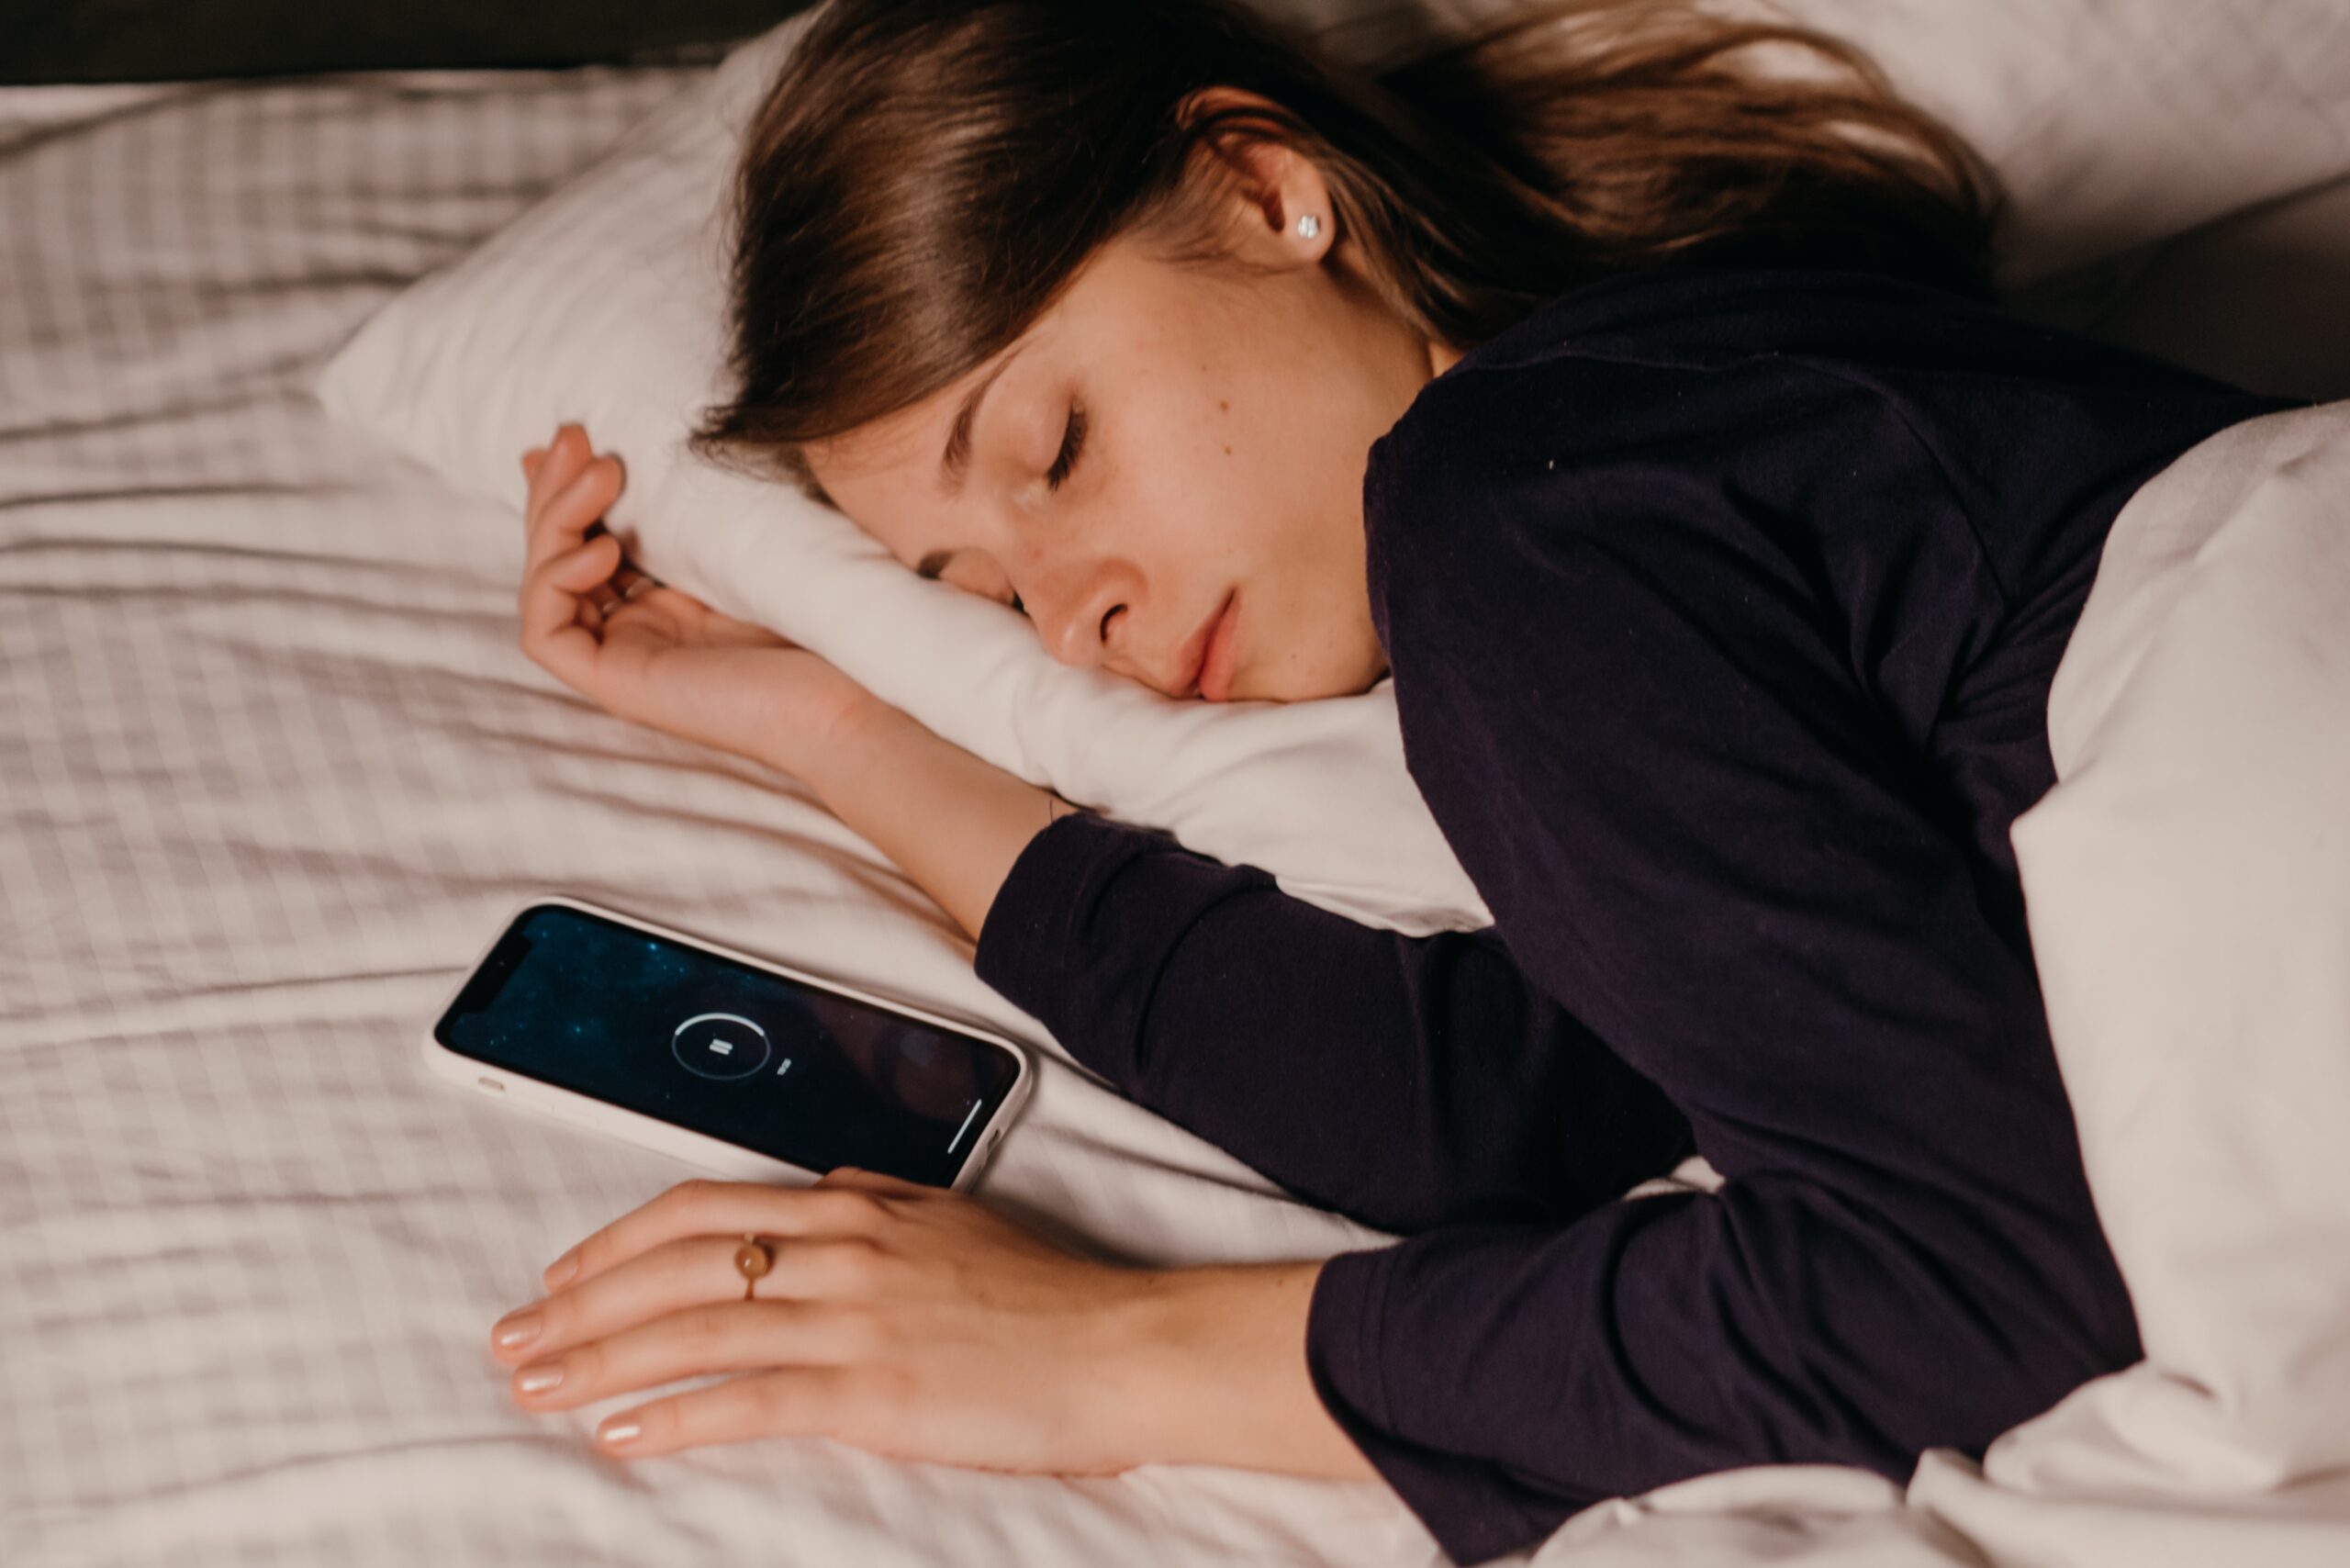 Apple advierte del peligro de dormir cerca de un iPhone